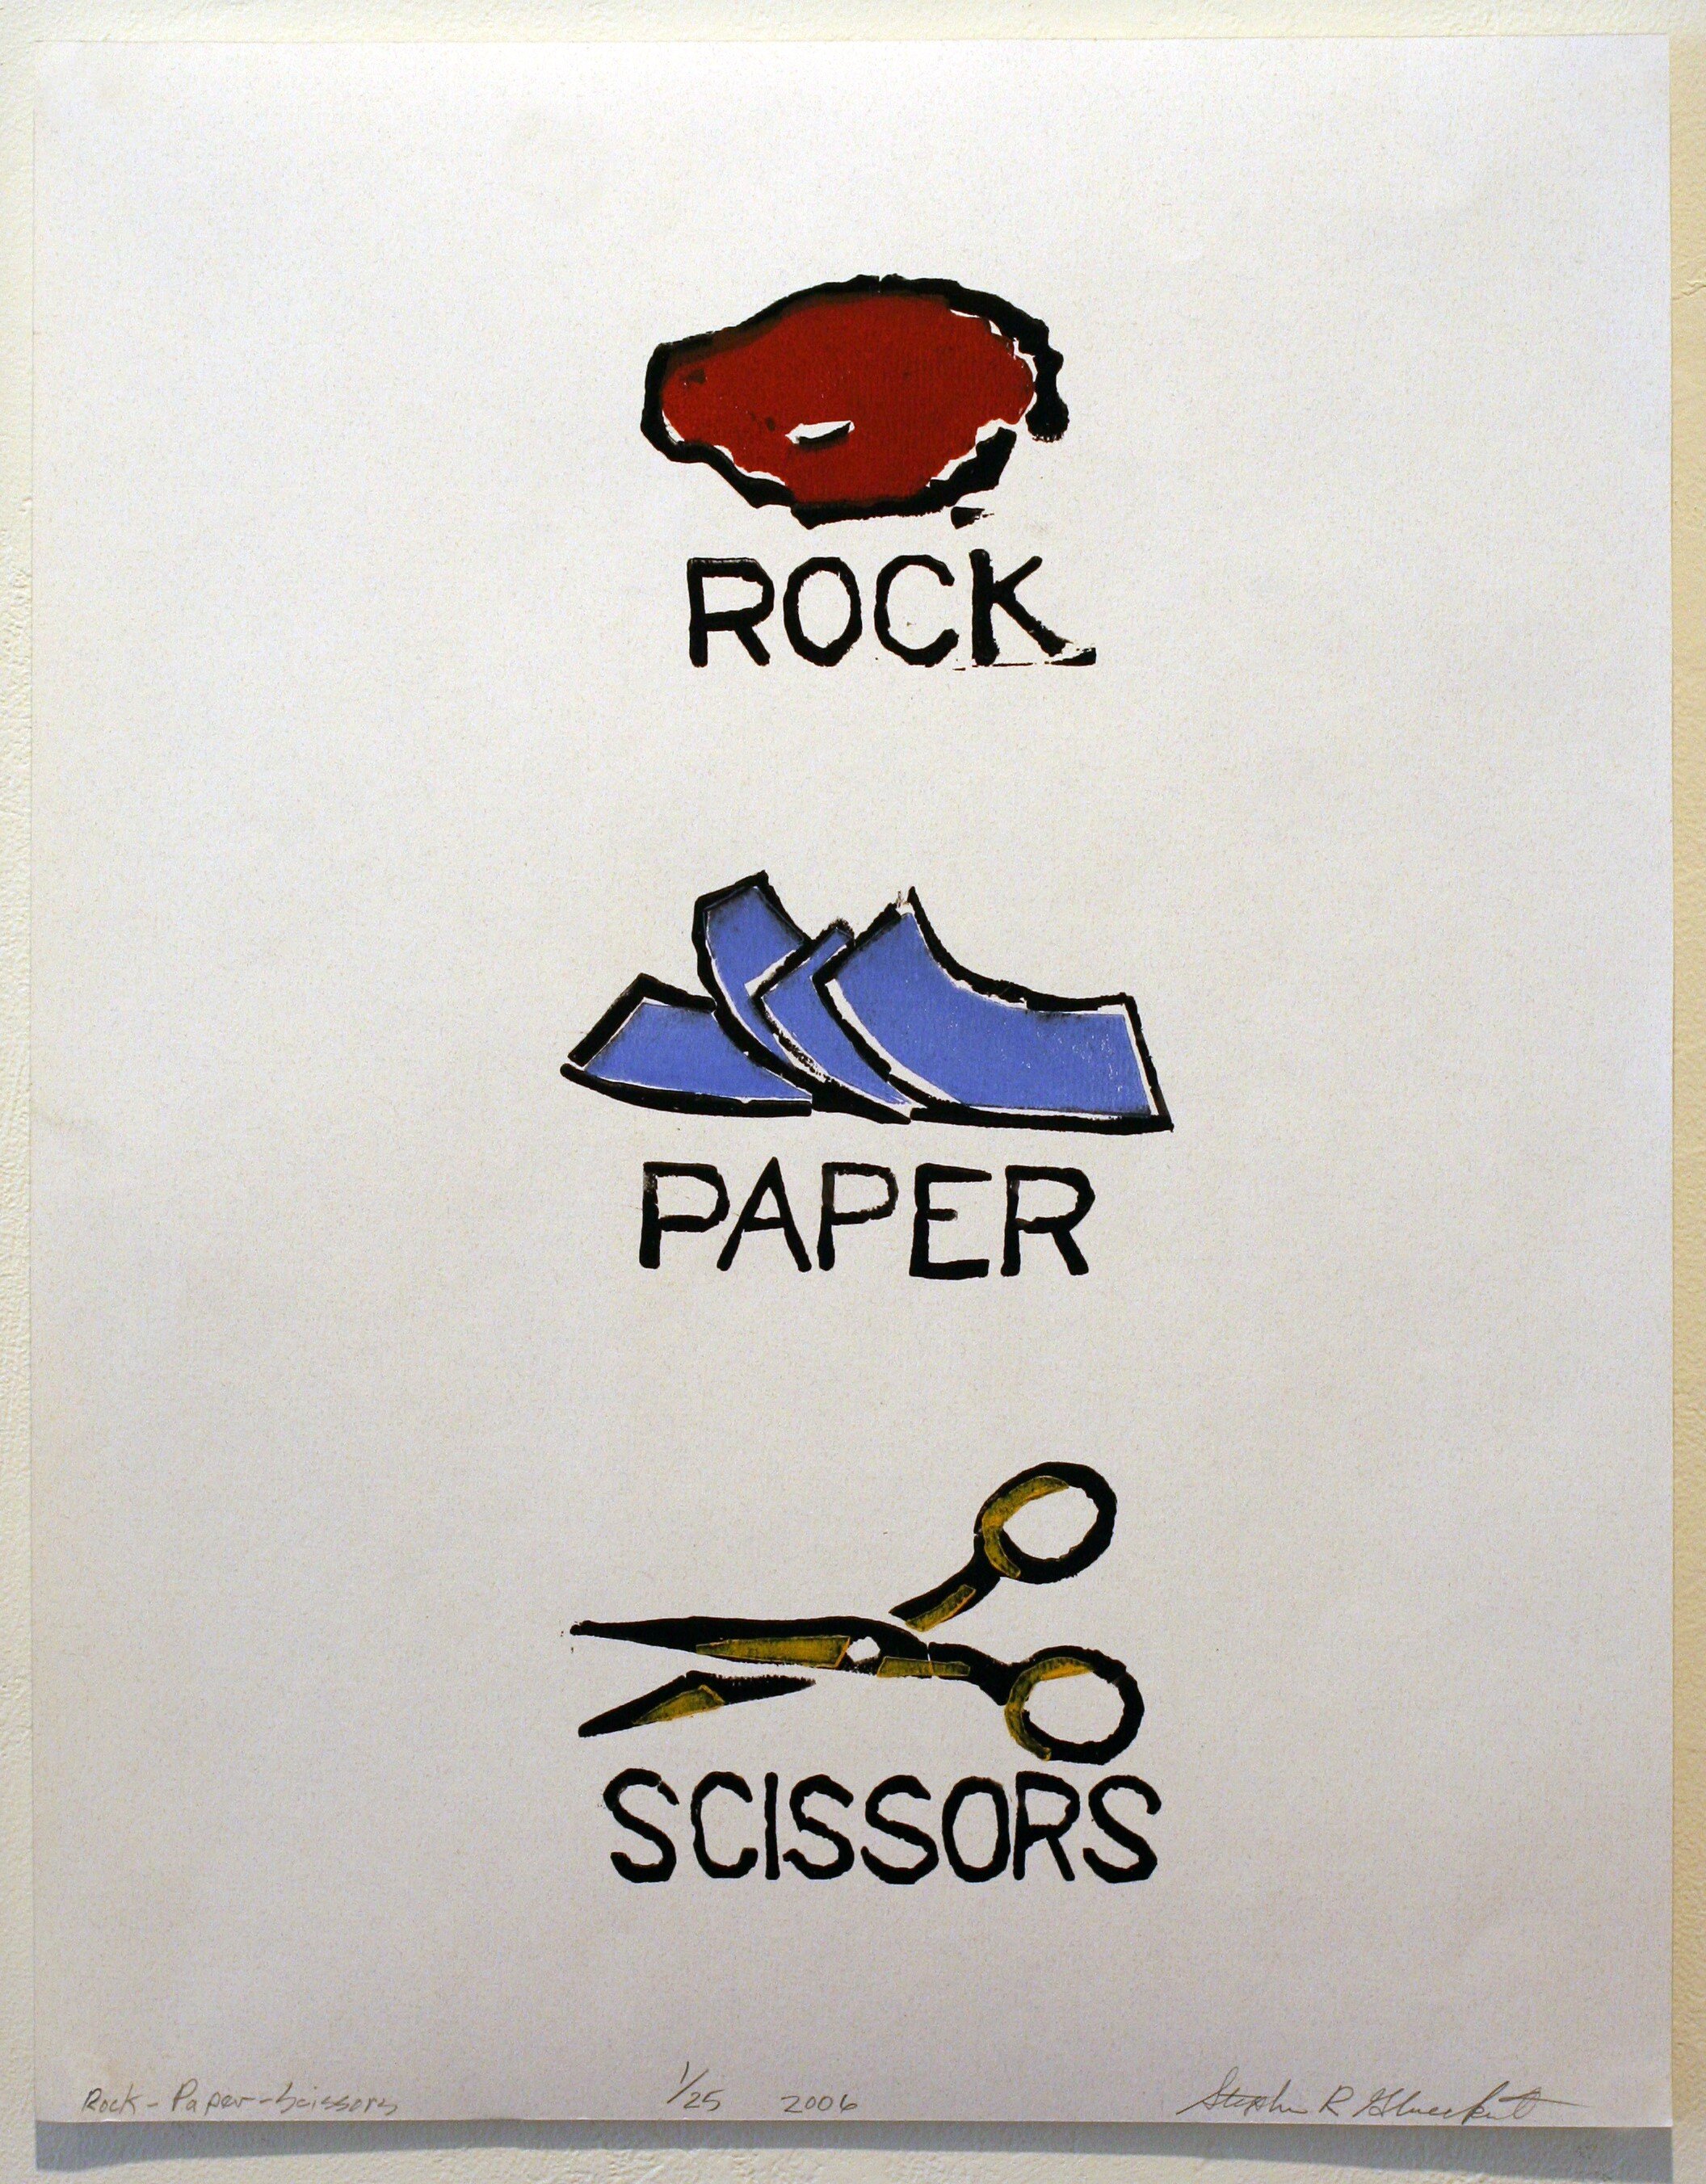 Rock, Paper, Scissors by Steve Glueckert